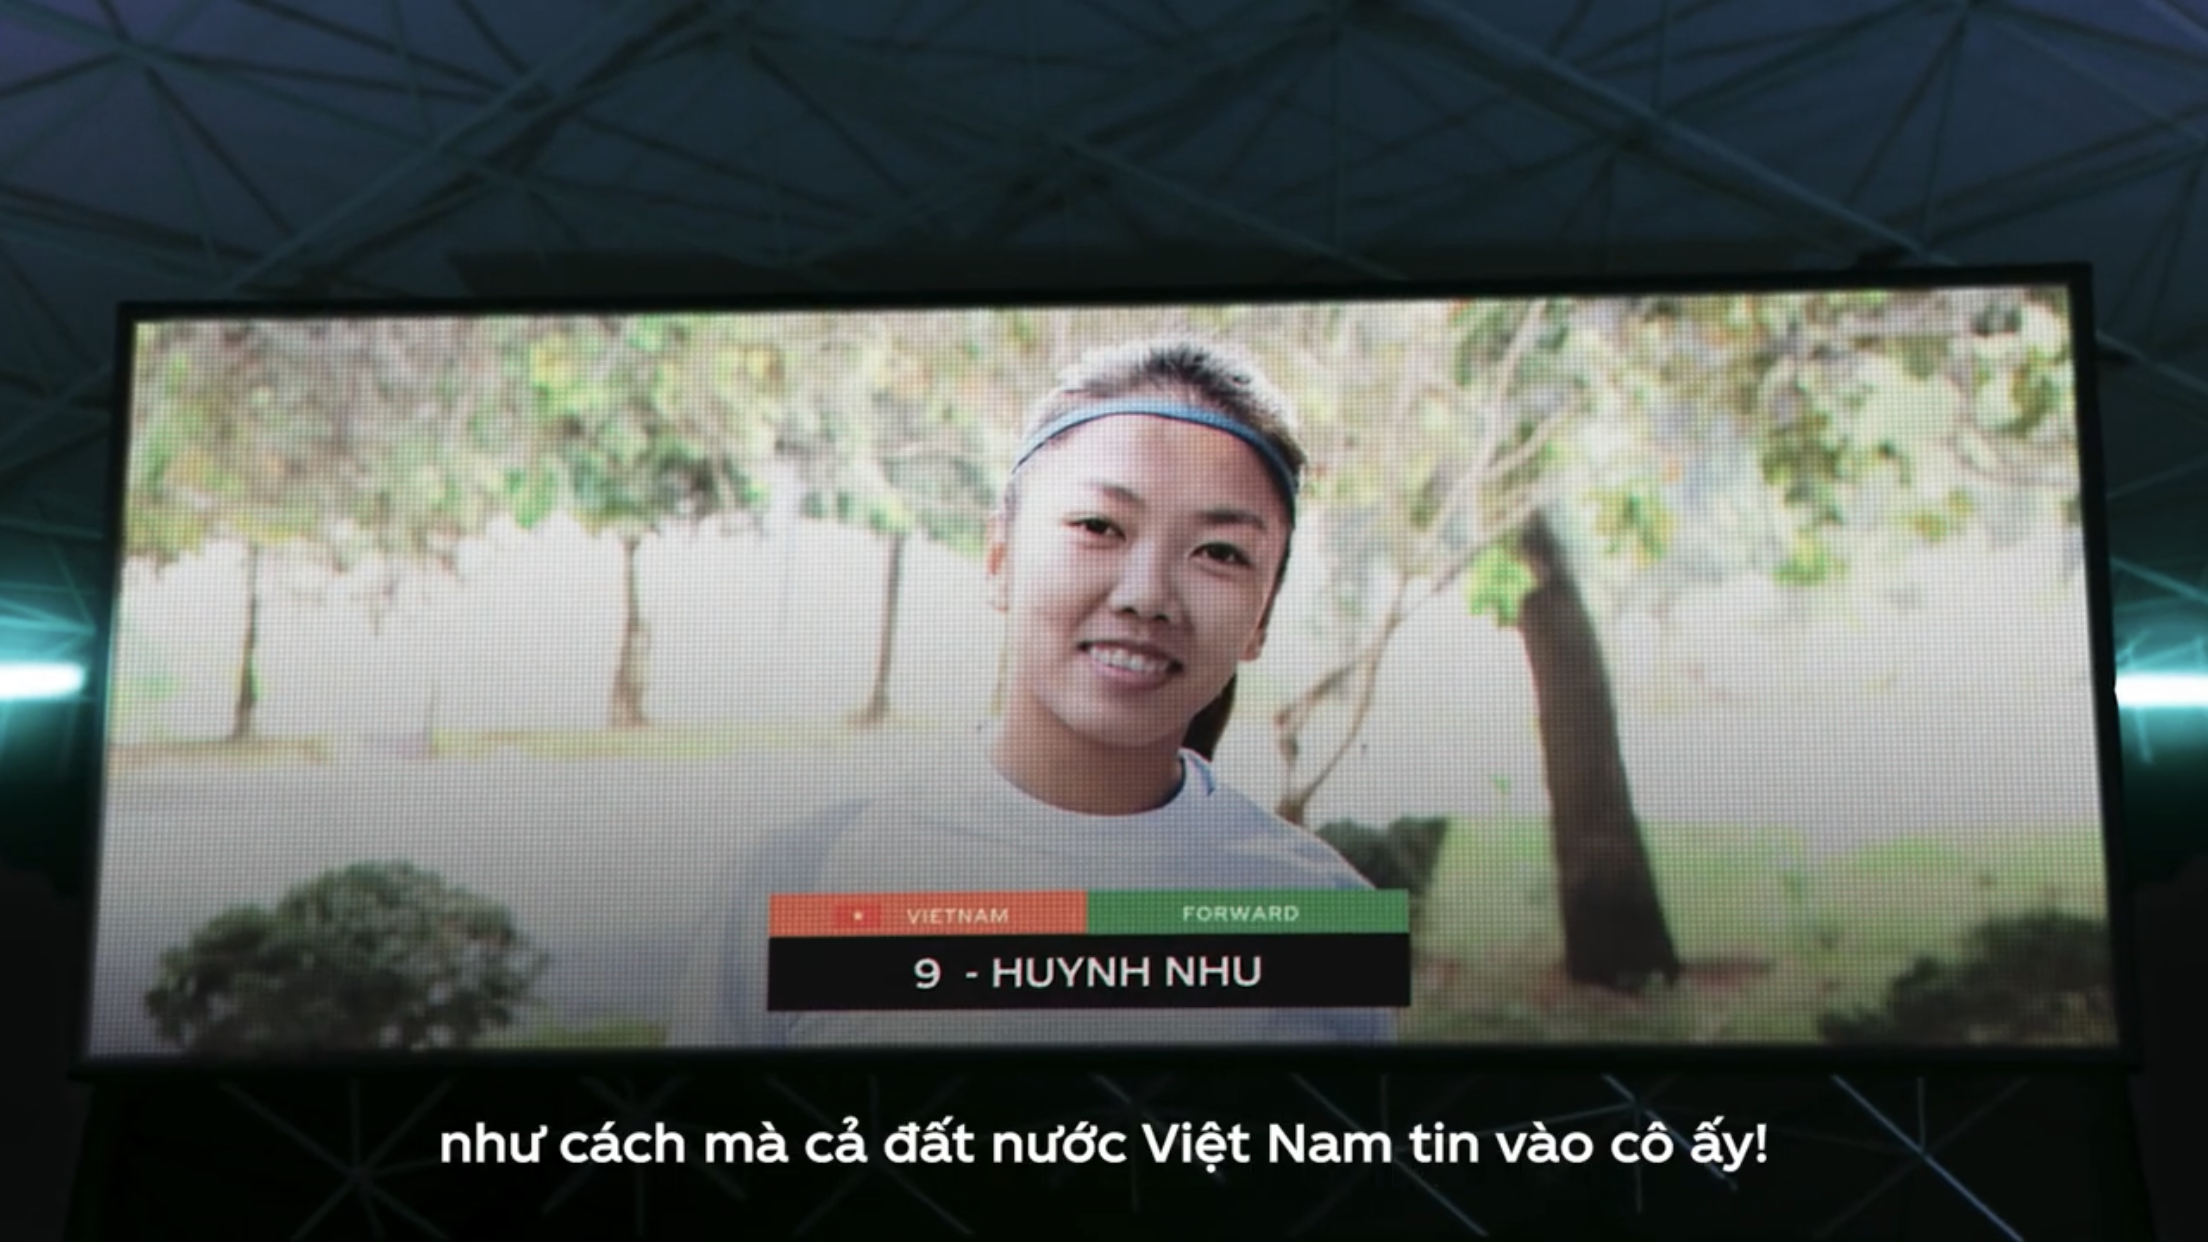 Tiền đạo Huỳnh Như xuất hiện trong video quảng cáo xu hướng toàn cầu. Ảnh cắt từ video